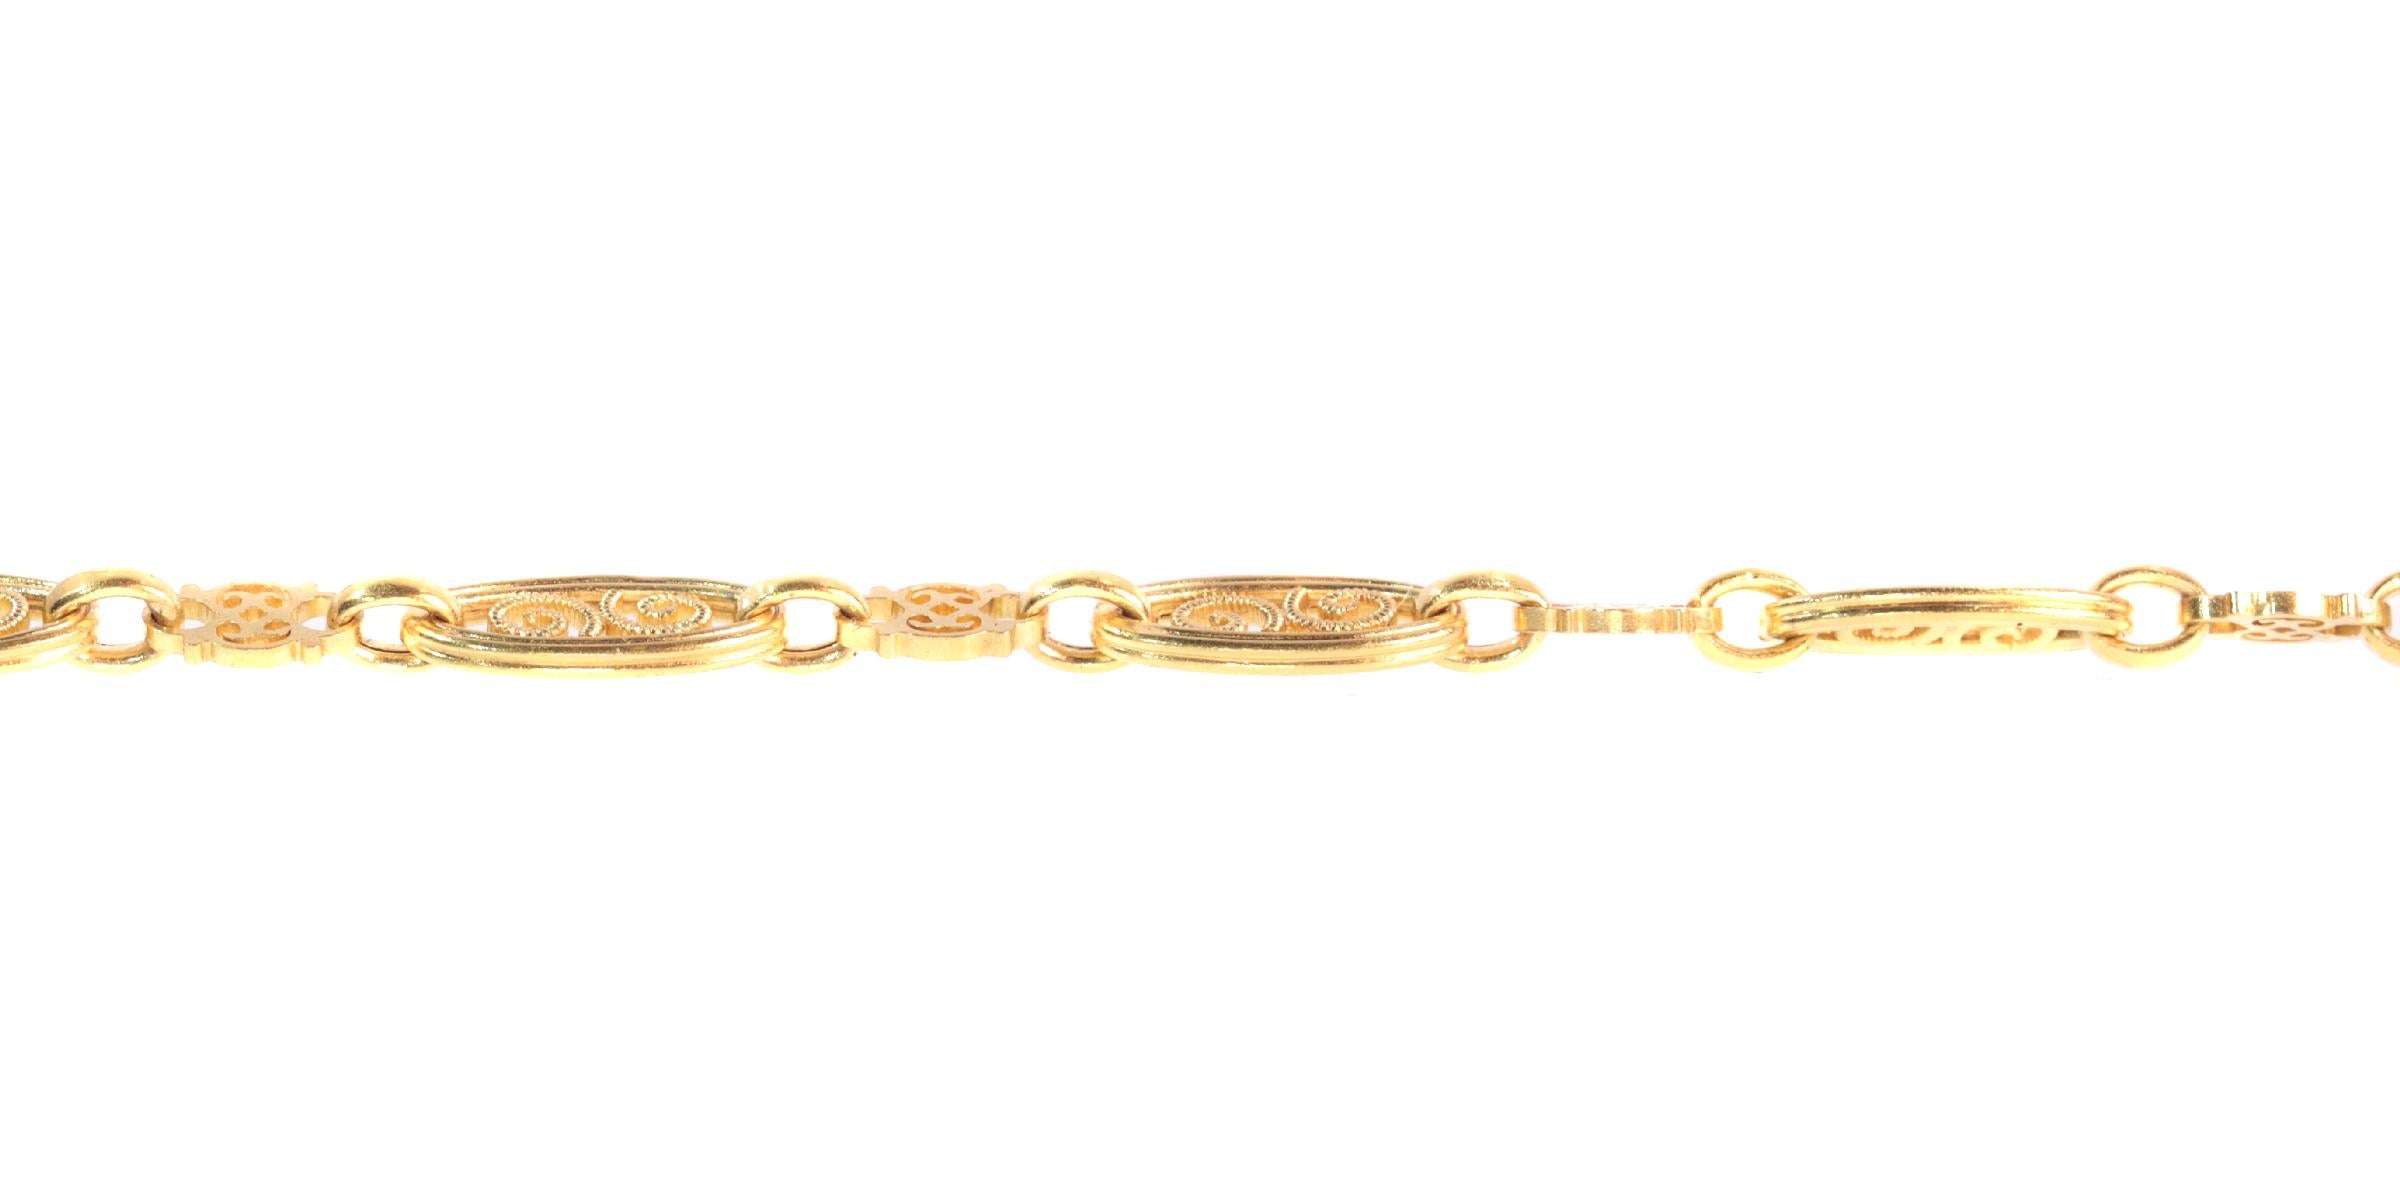 Antique 18 Karat Yellow Gold Long Sautoir Long Gold Necklace 135 cm Long For Sale 1